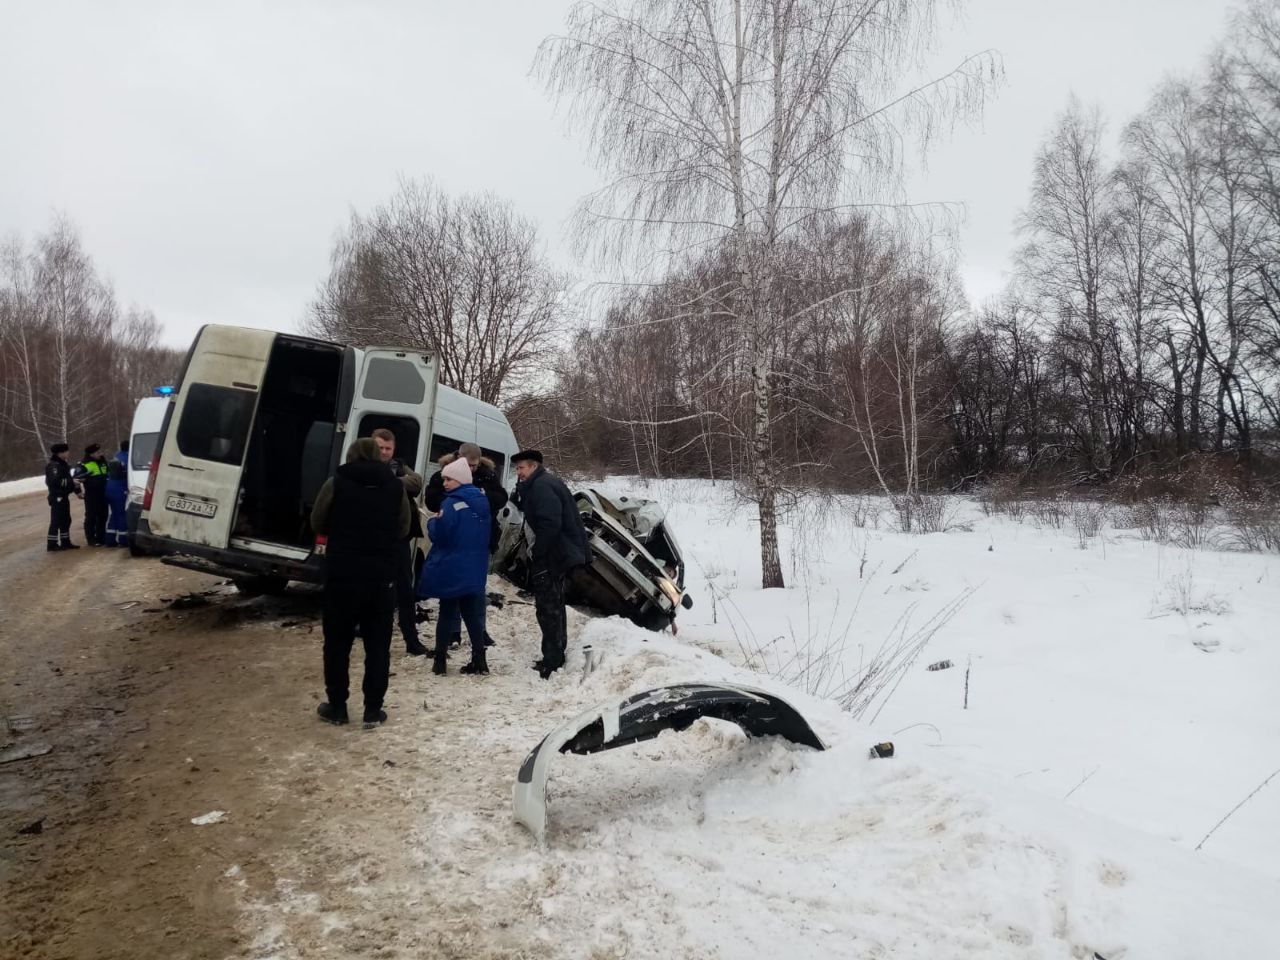 Прокуратура проконтролирует результаты проверок по факту смертельного ДТП с маршруткой в Кимовском районе